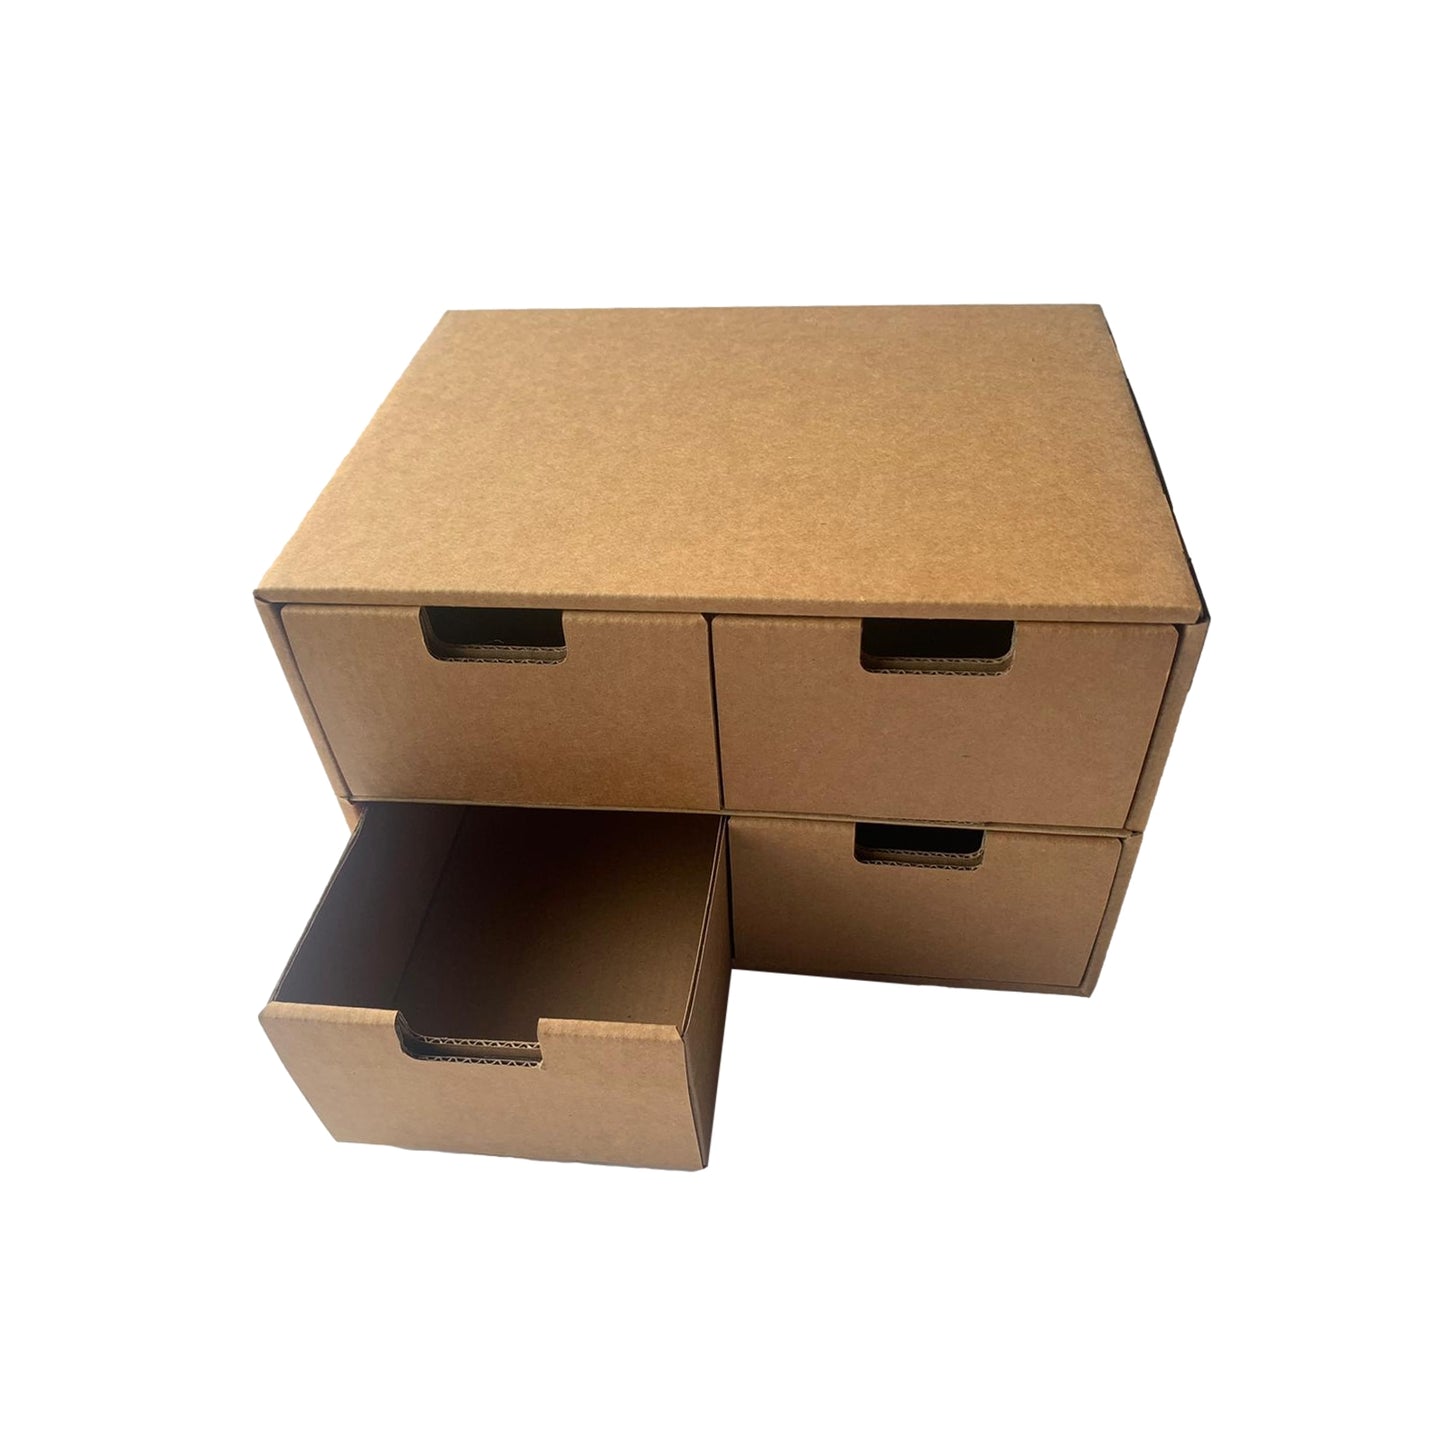 Pack of 10 Kraft Desktop Organiser Drawers Cardboard DIY Storage Boxes